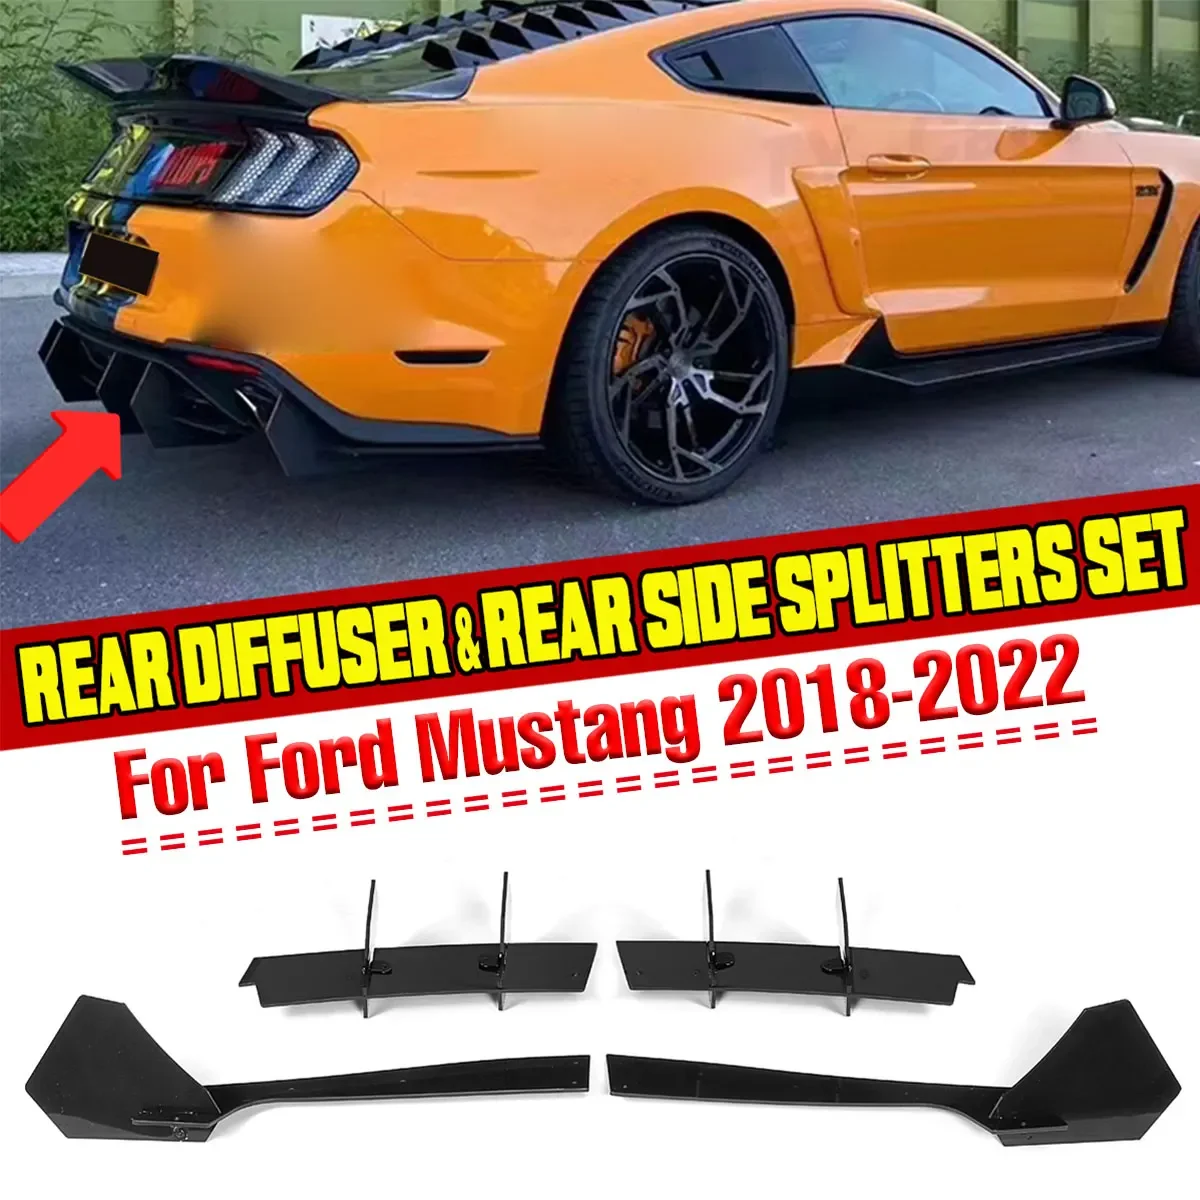 

Новый разветвитель для губ заднего бампера автомобиля, спойлер, дефлектор шасси, передняя сторона заднего бампера, щитки для Ford, для Mustang 2018-2022, комплект кузова